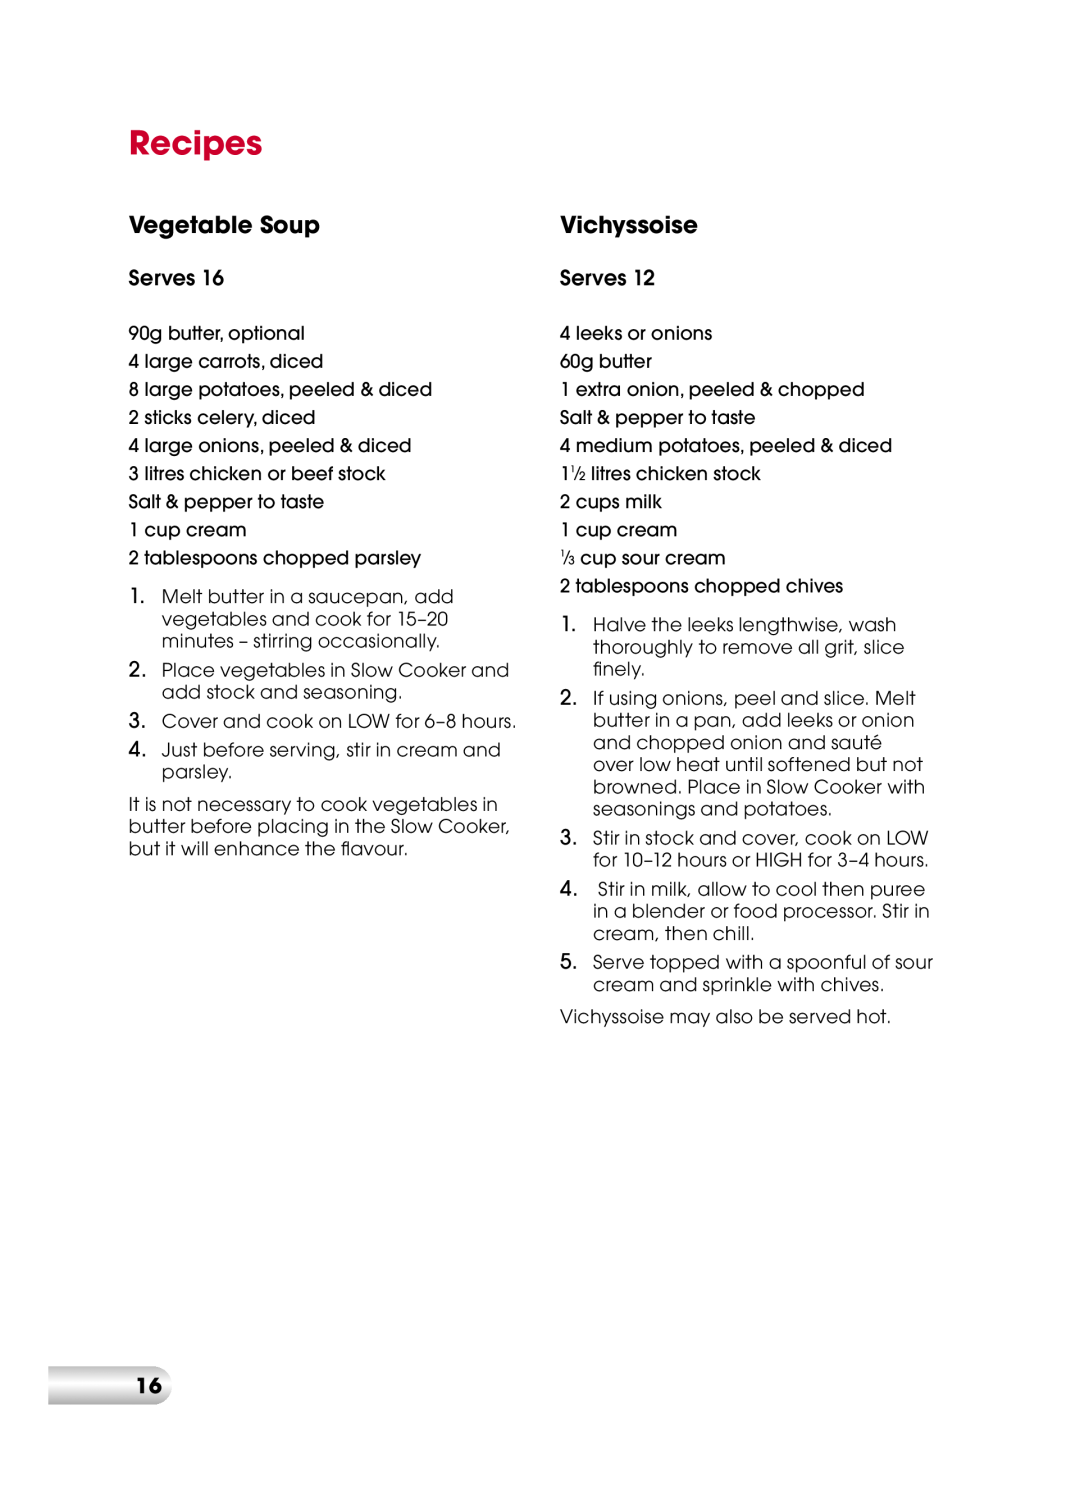 Kambrook KSC110 manual Recipes, Vegetable Soup, Vichyssoise 